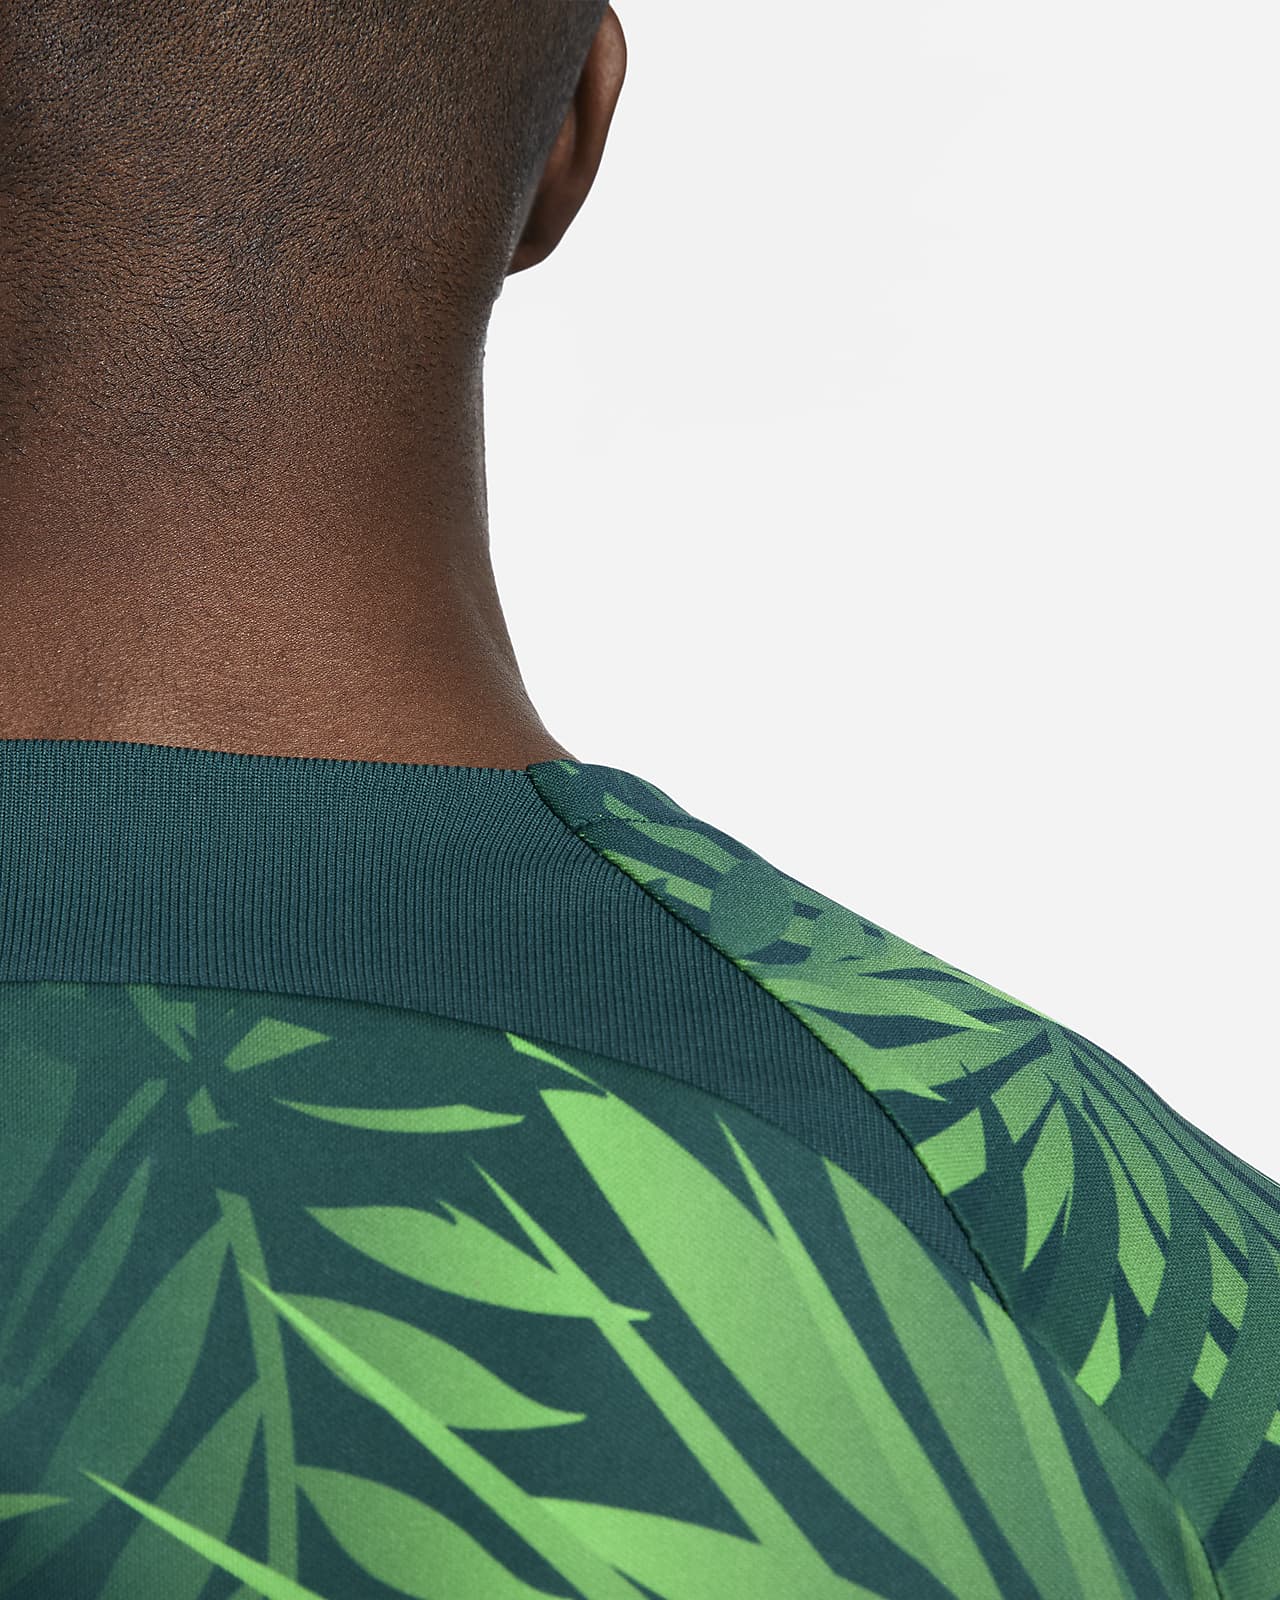 Camiseta Nike Brasil Academy Pro Masculina - Verde